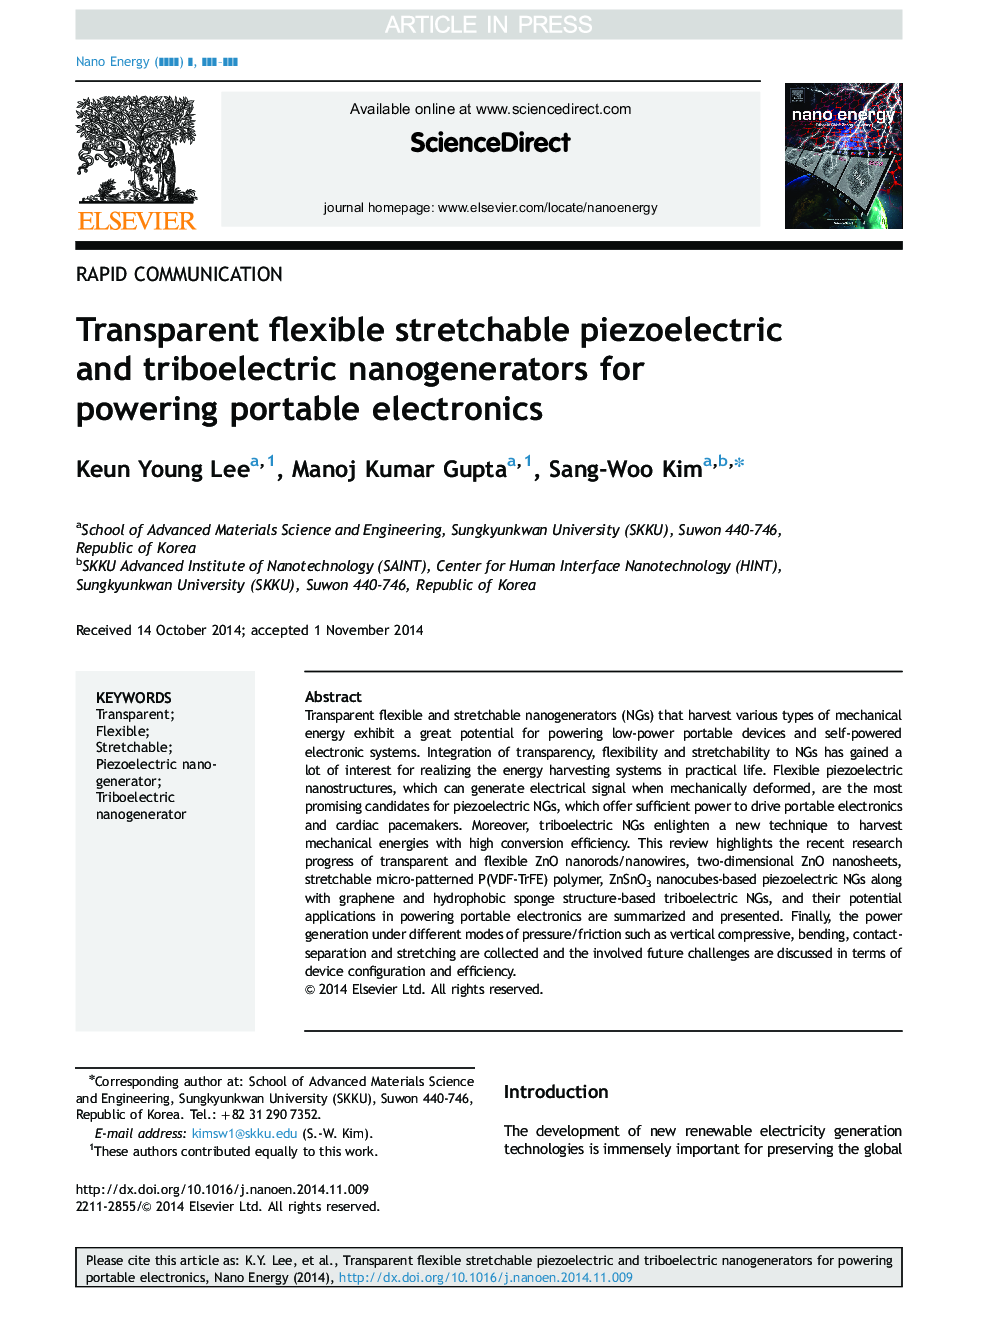 نانوژنراتورهای پیزوالکتریک و انعطاف پذیر قابل انعطاف شفاف برای تامین برق الکترونیک قابل حمل 